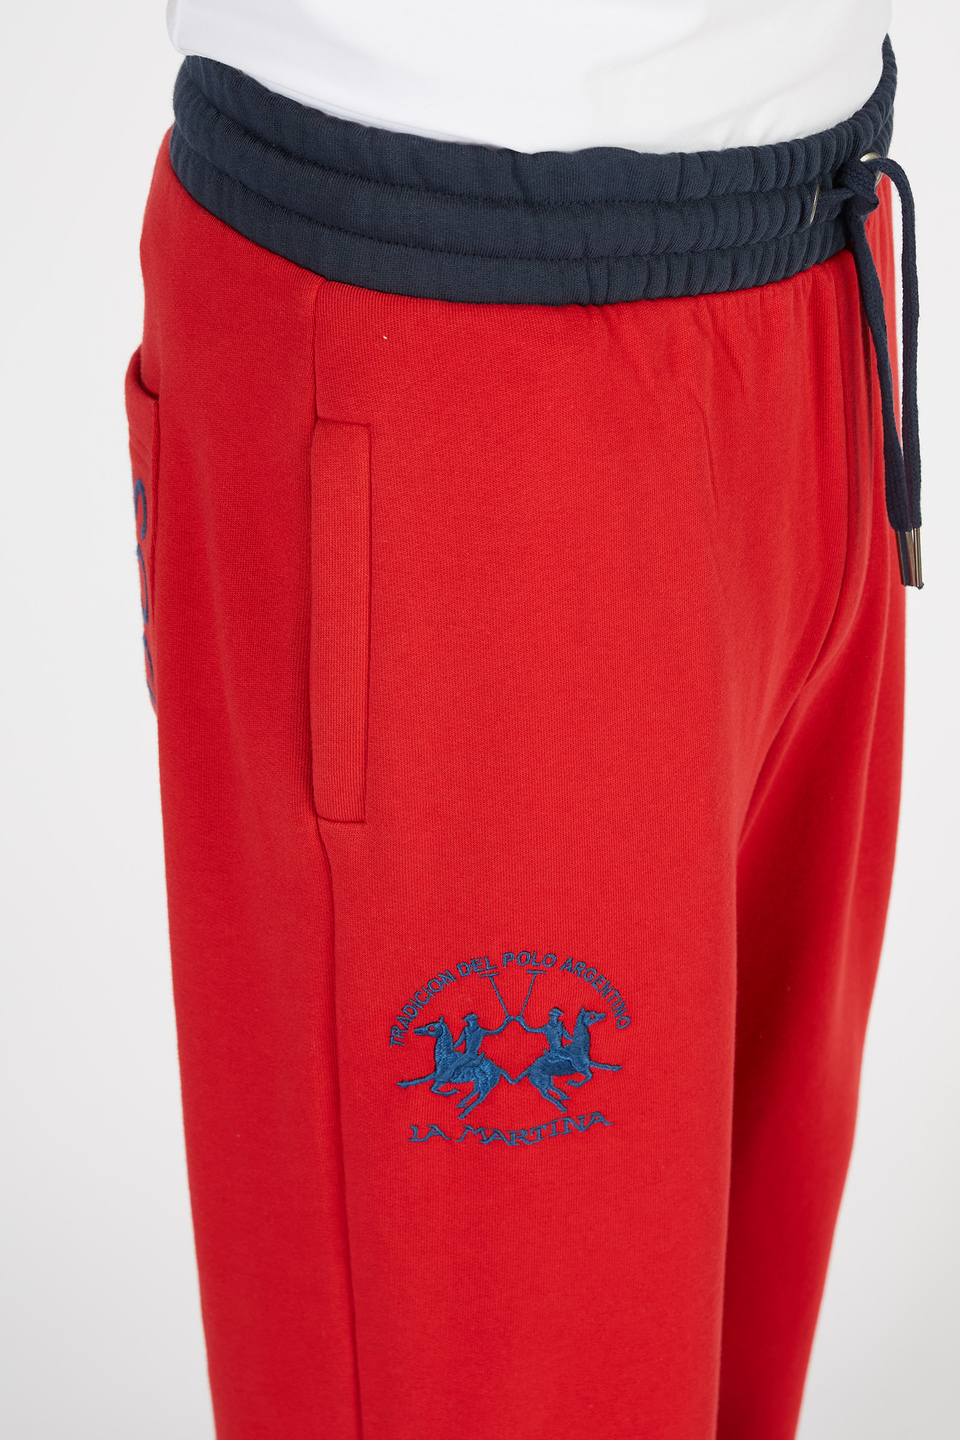 Comfort fit cotton jogger trousers for men | La Martina - Official Online Shop